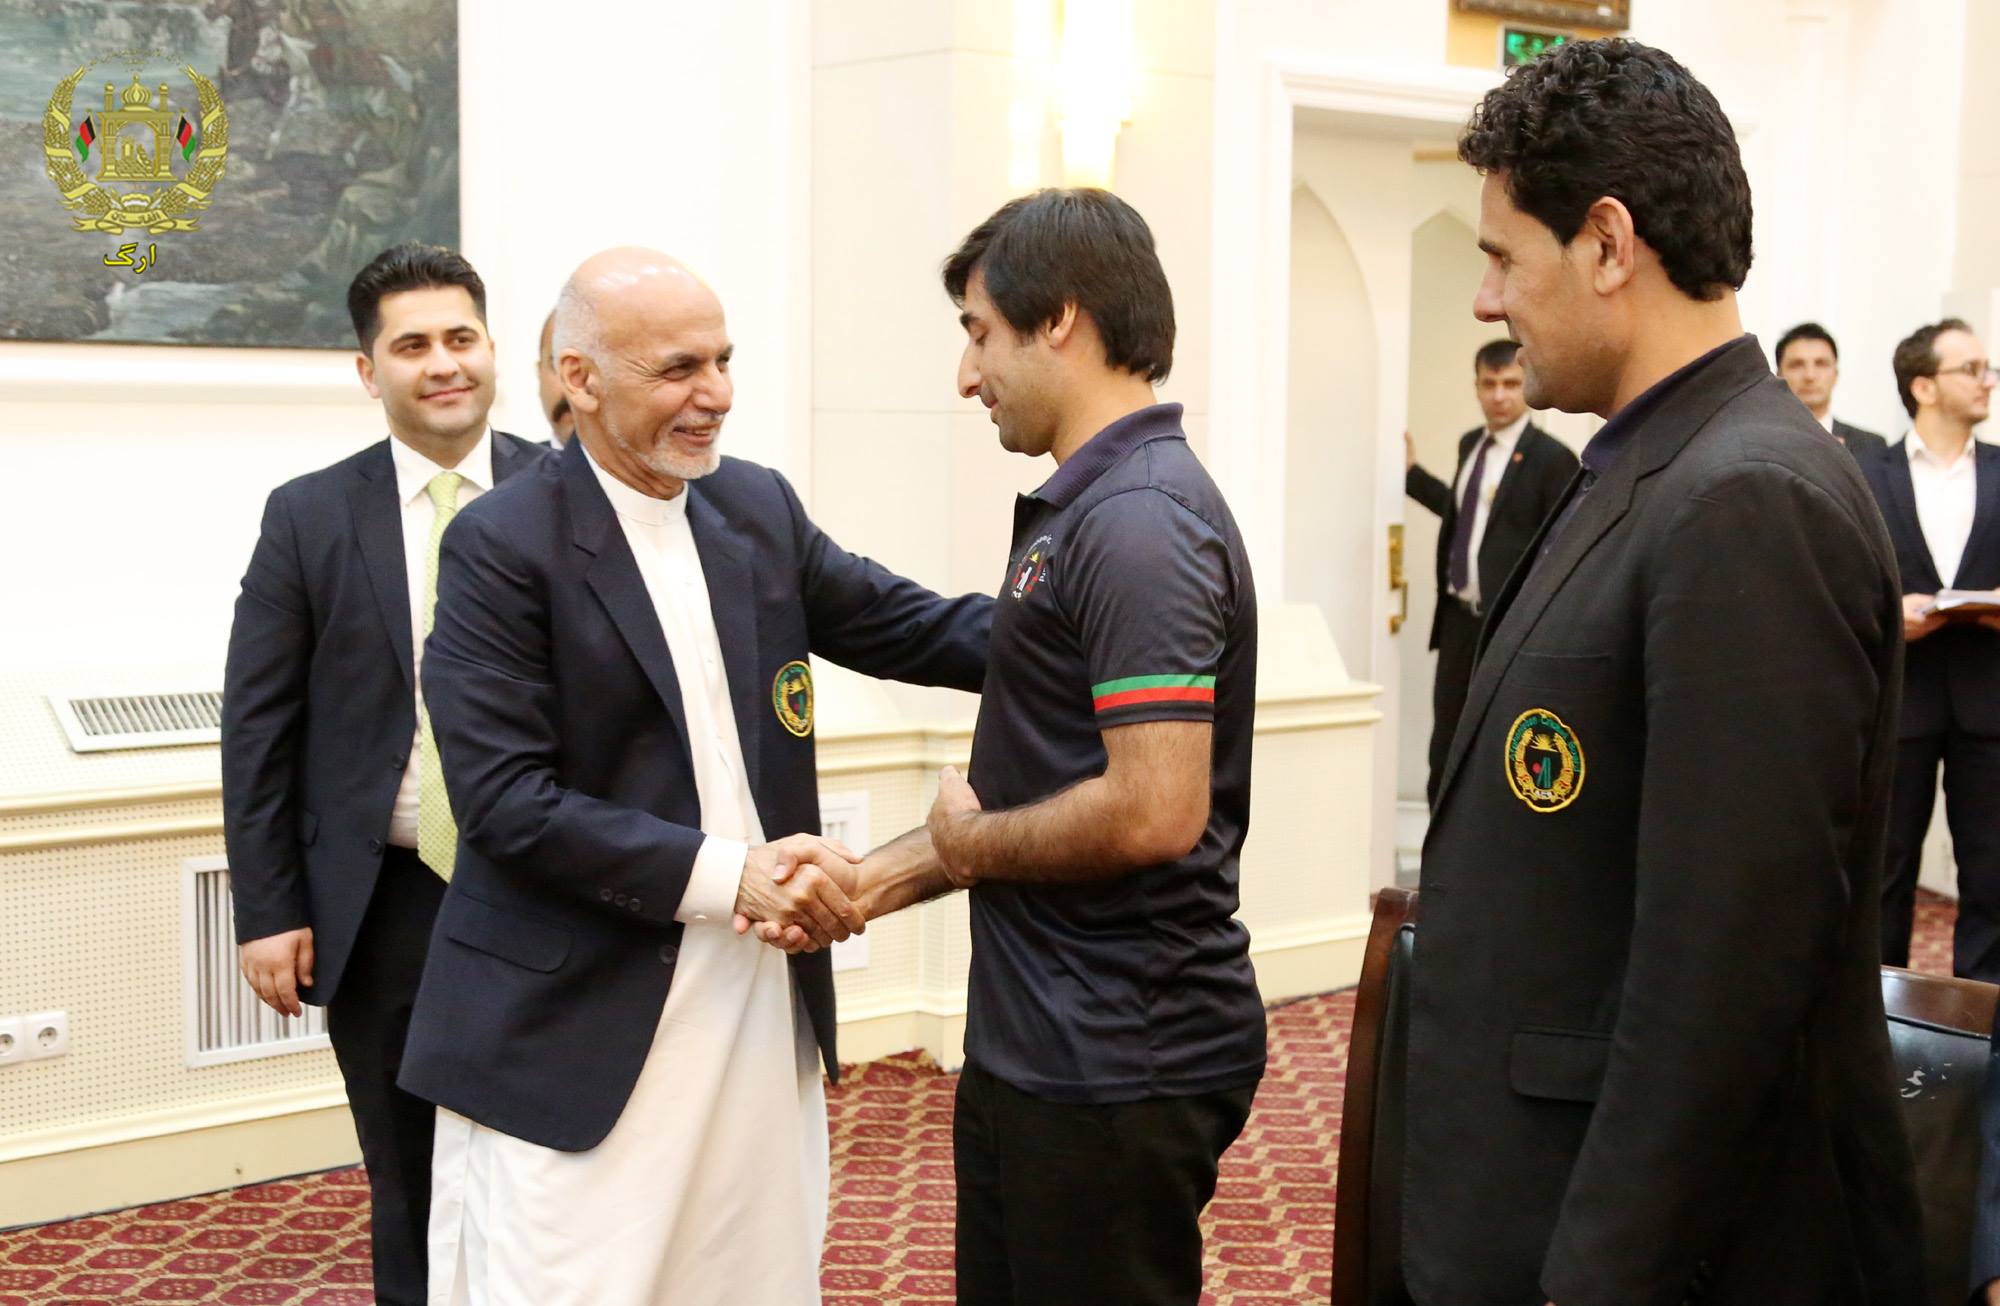  رئیس جمهورغنی به بازیکنان تیم ملی کرکت، مدال های دولتی غازی محمدایوب خان را اعطا کرد